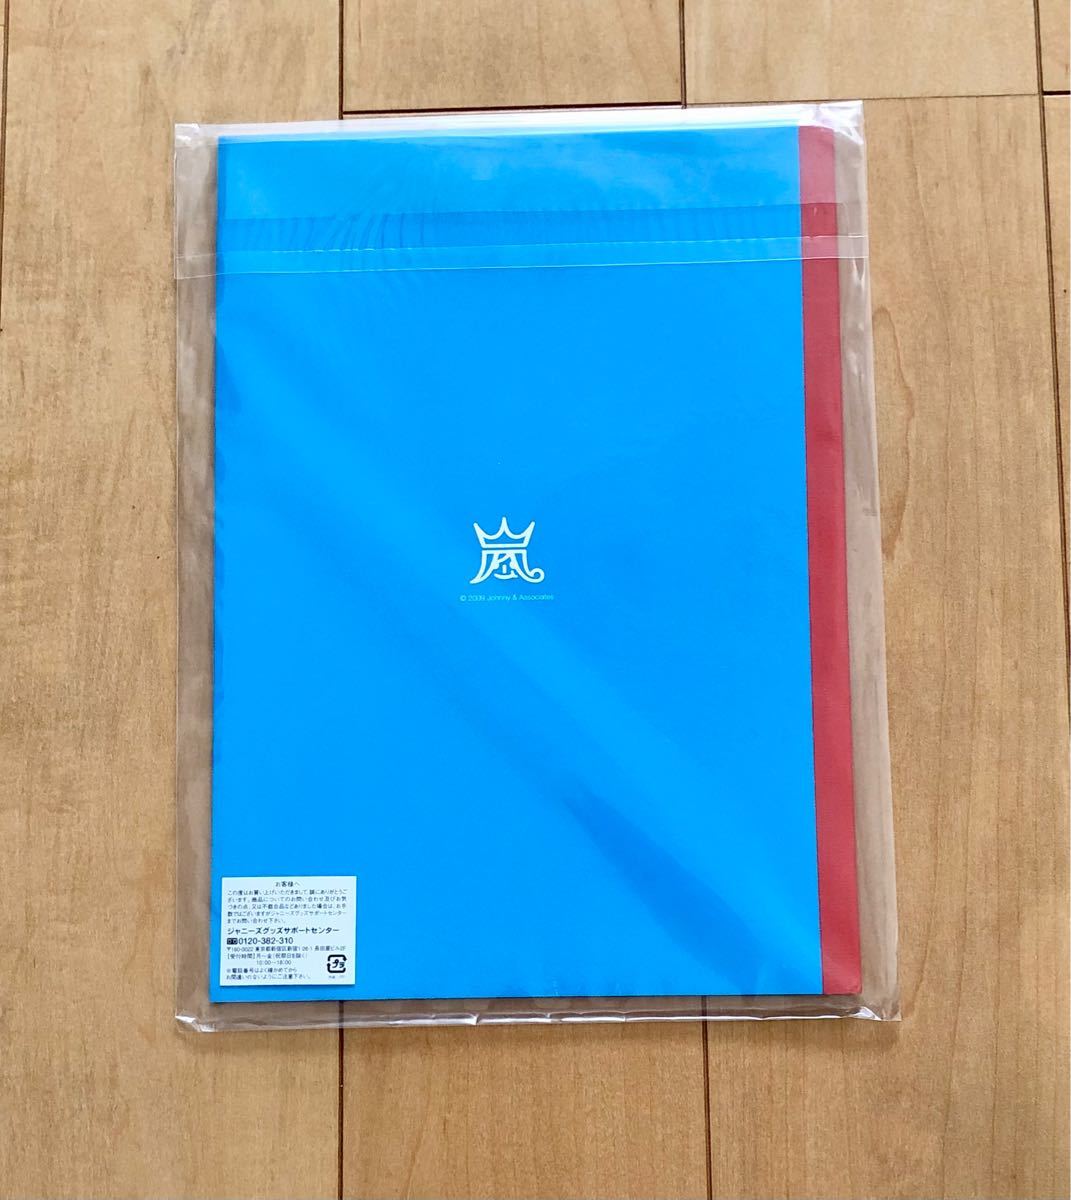 嵐 ARASHI Anniversary Tour 5×10 公式グッズARASHI じゆうのーと ノート 未開封 未使用 新品